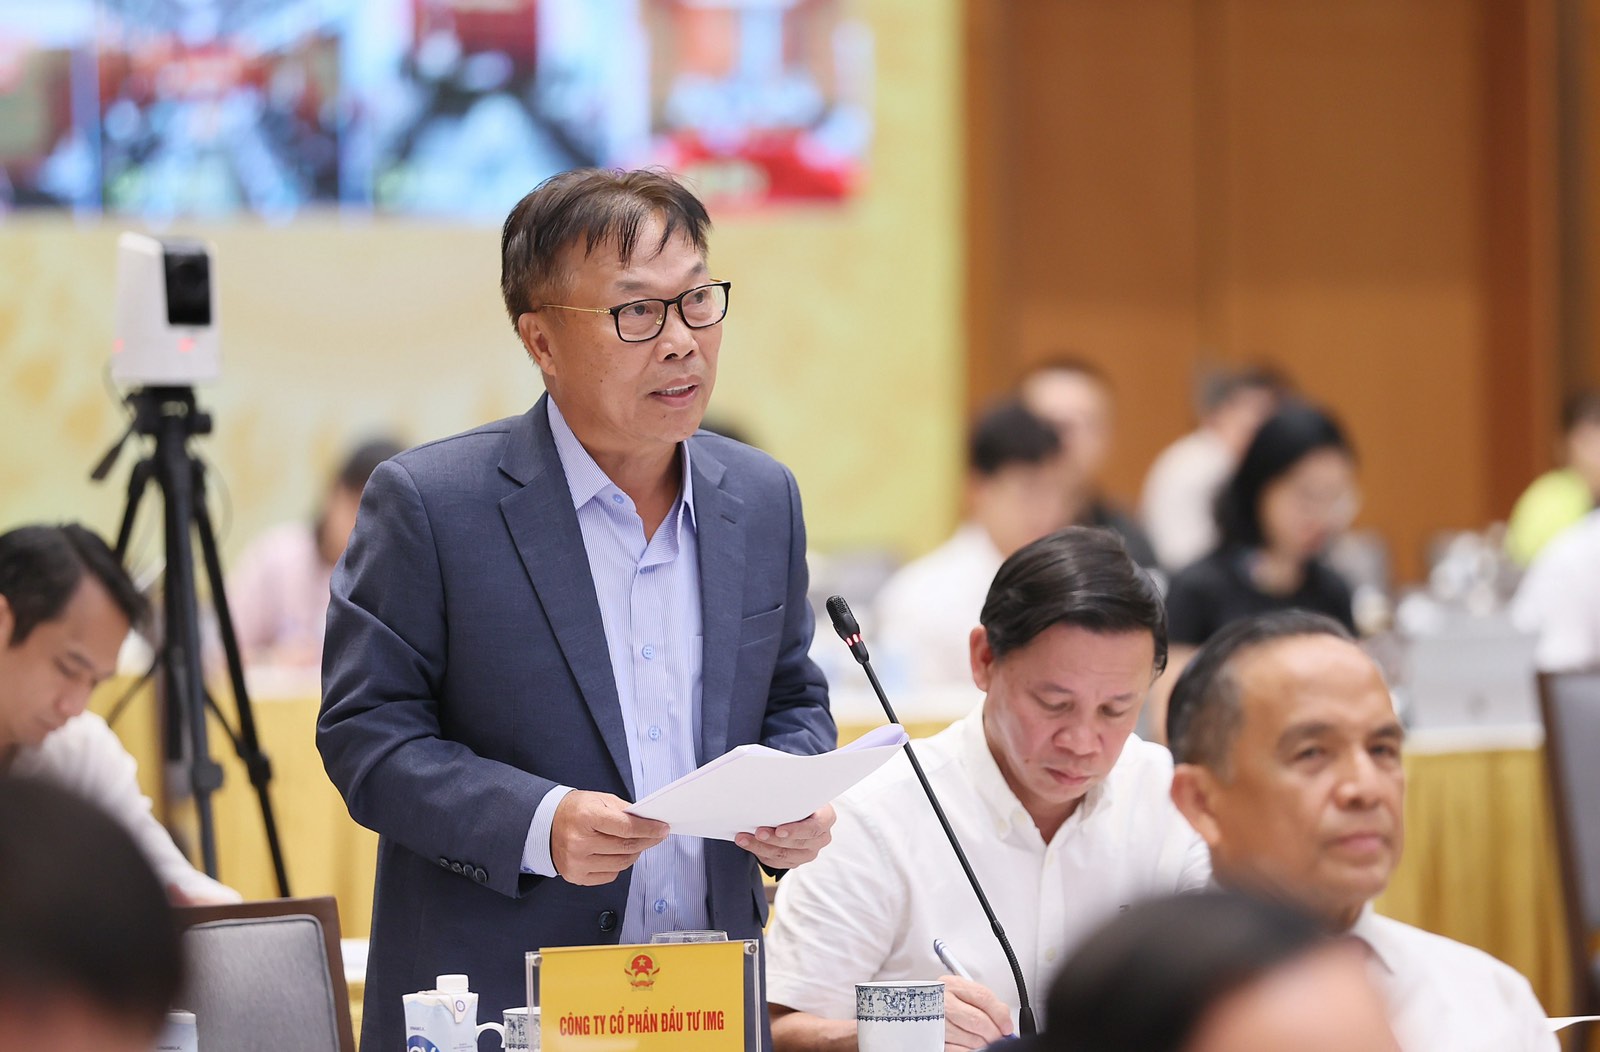 Những đóng góp của CT HĐQT IMG Lê Tự Minh tại Hội nghị đánh giá tình hình, tháo gỡ khó khăn cho thị trường bất động sản do Thủ tướng chủ trì